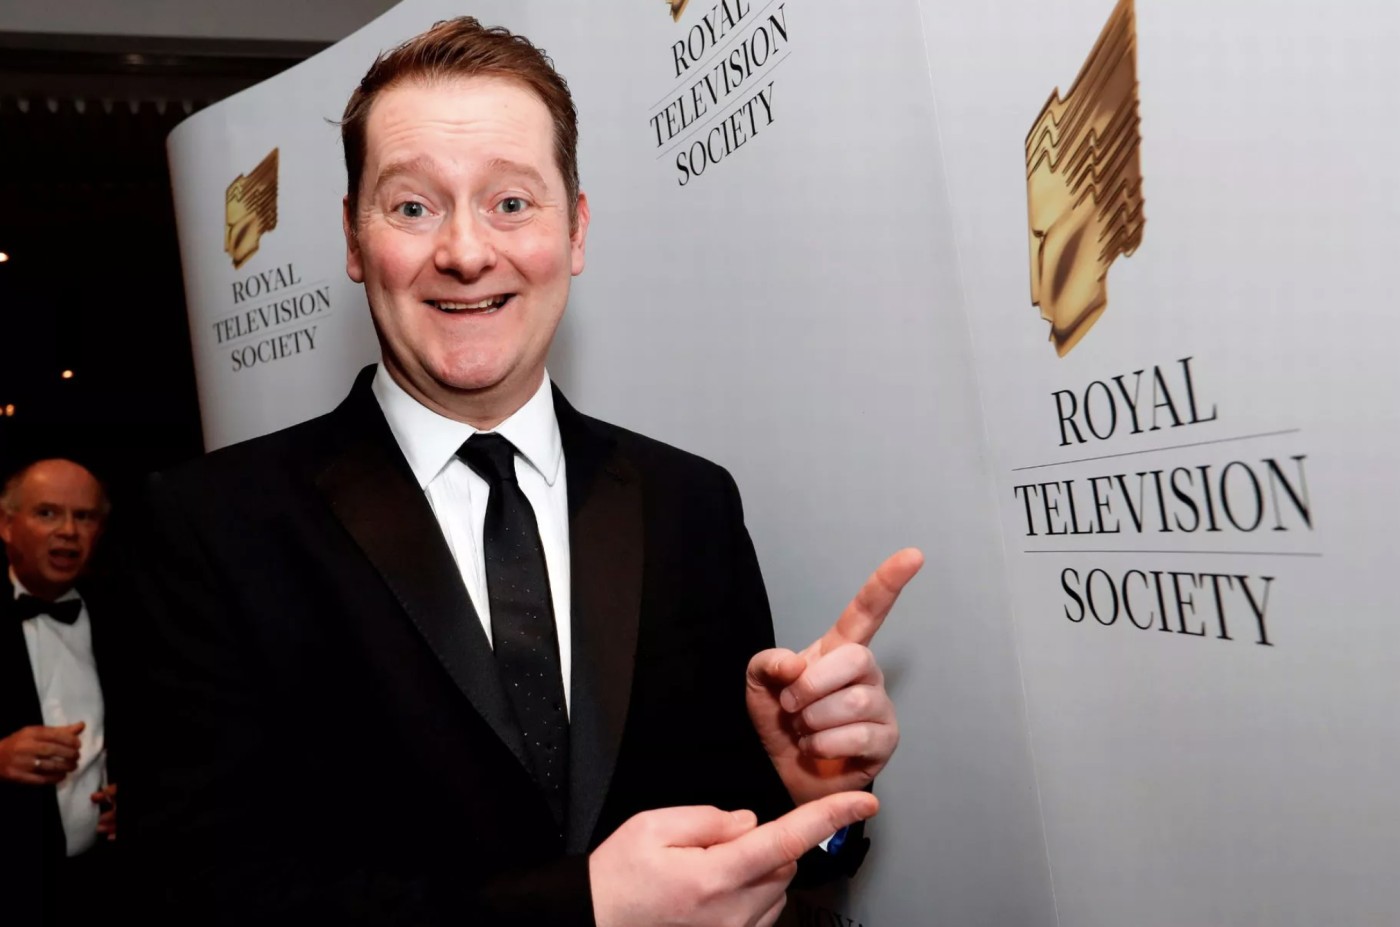 Jackpot! Apple TV+ wins 9 nominations at the Royal Television Society